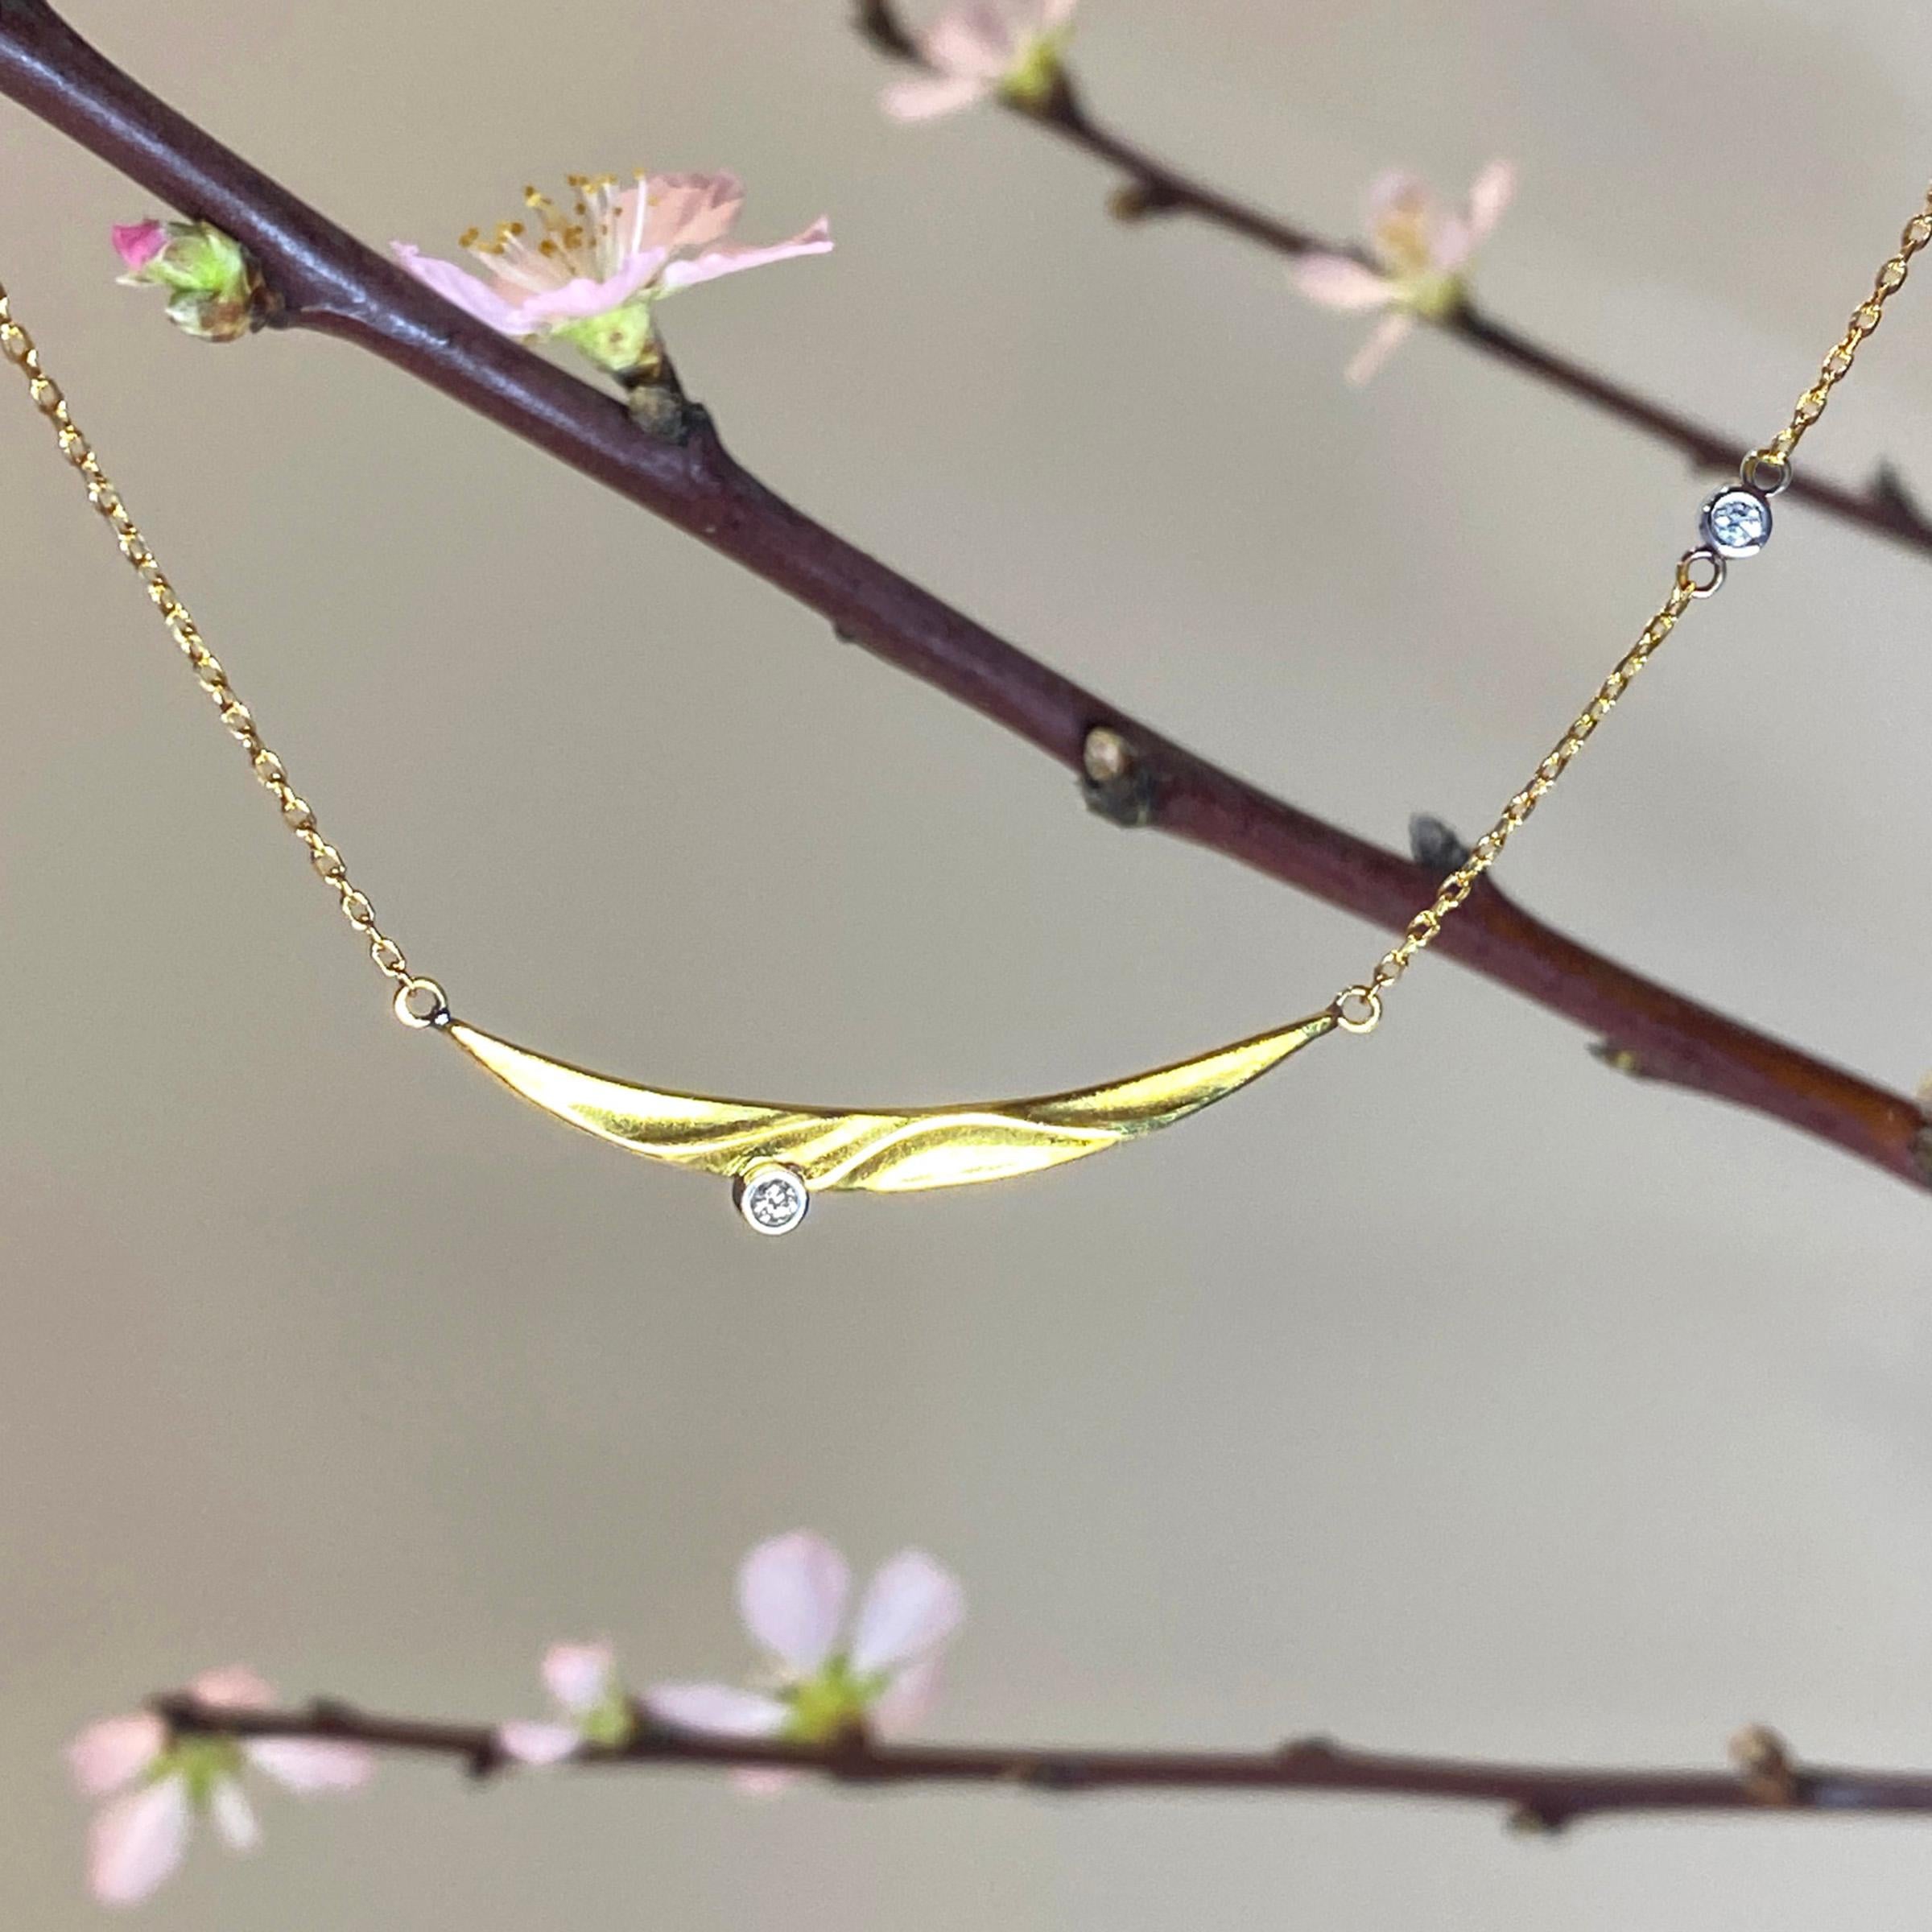 Le collier moderne Seaside de Keiko Mita est fabriqué à la main par l'artiste à partir d'or jaune 14 carats et de diamants de 0,06 carat. Le pendentif contemporain, qui mesure 43 mm de large et 5 mm de haut, est présenté sur une chaîne câble en or